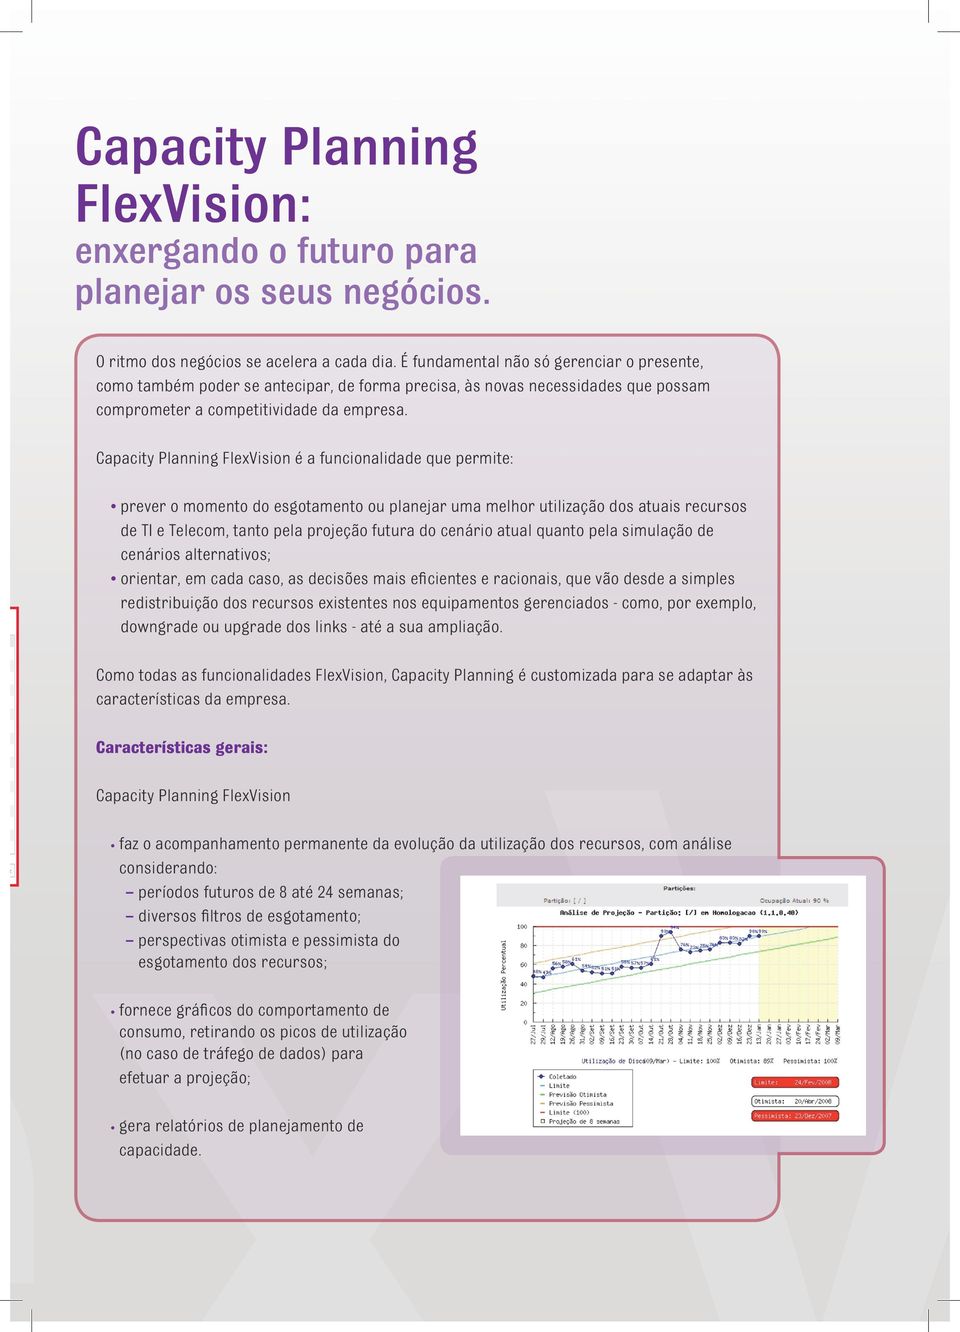 Capacity Planning FlexVision é a funcionalidade que permite: prever o momento do esgotamento ou planejar uma melhor utilização dos atuais recursos de TI e Telecom, tanto pela projeção futura do